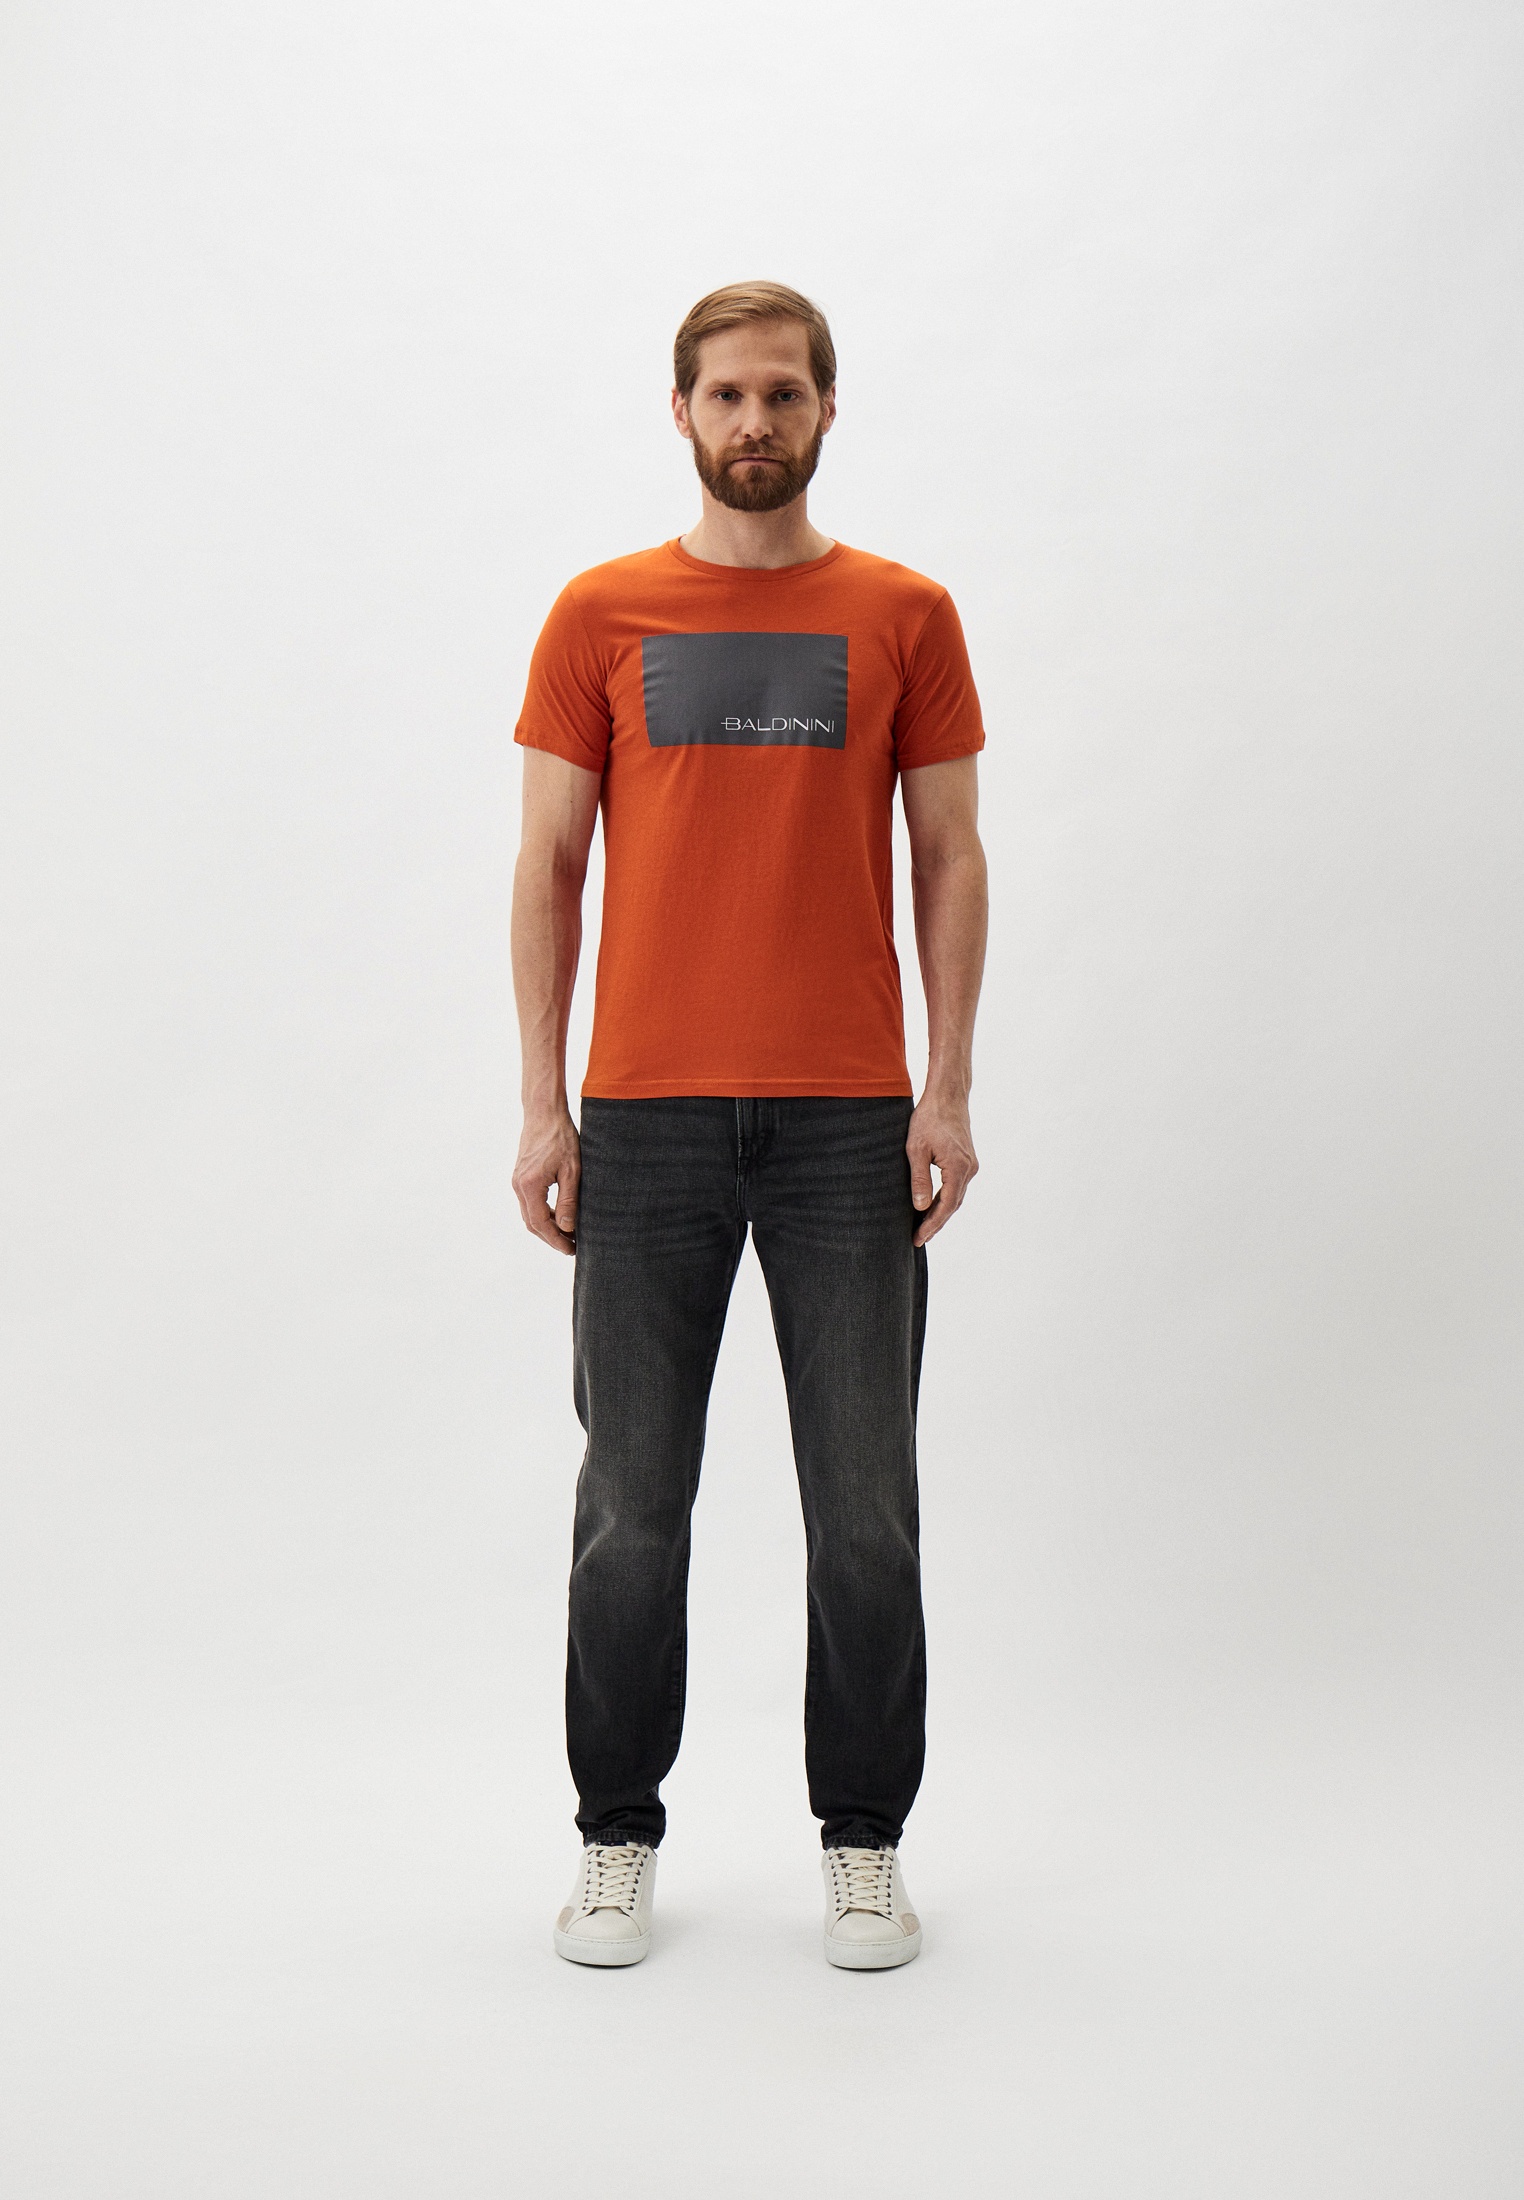 Мужская футболка Baldinini (Балдинини) B-OLM-M014: изображение 2